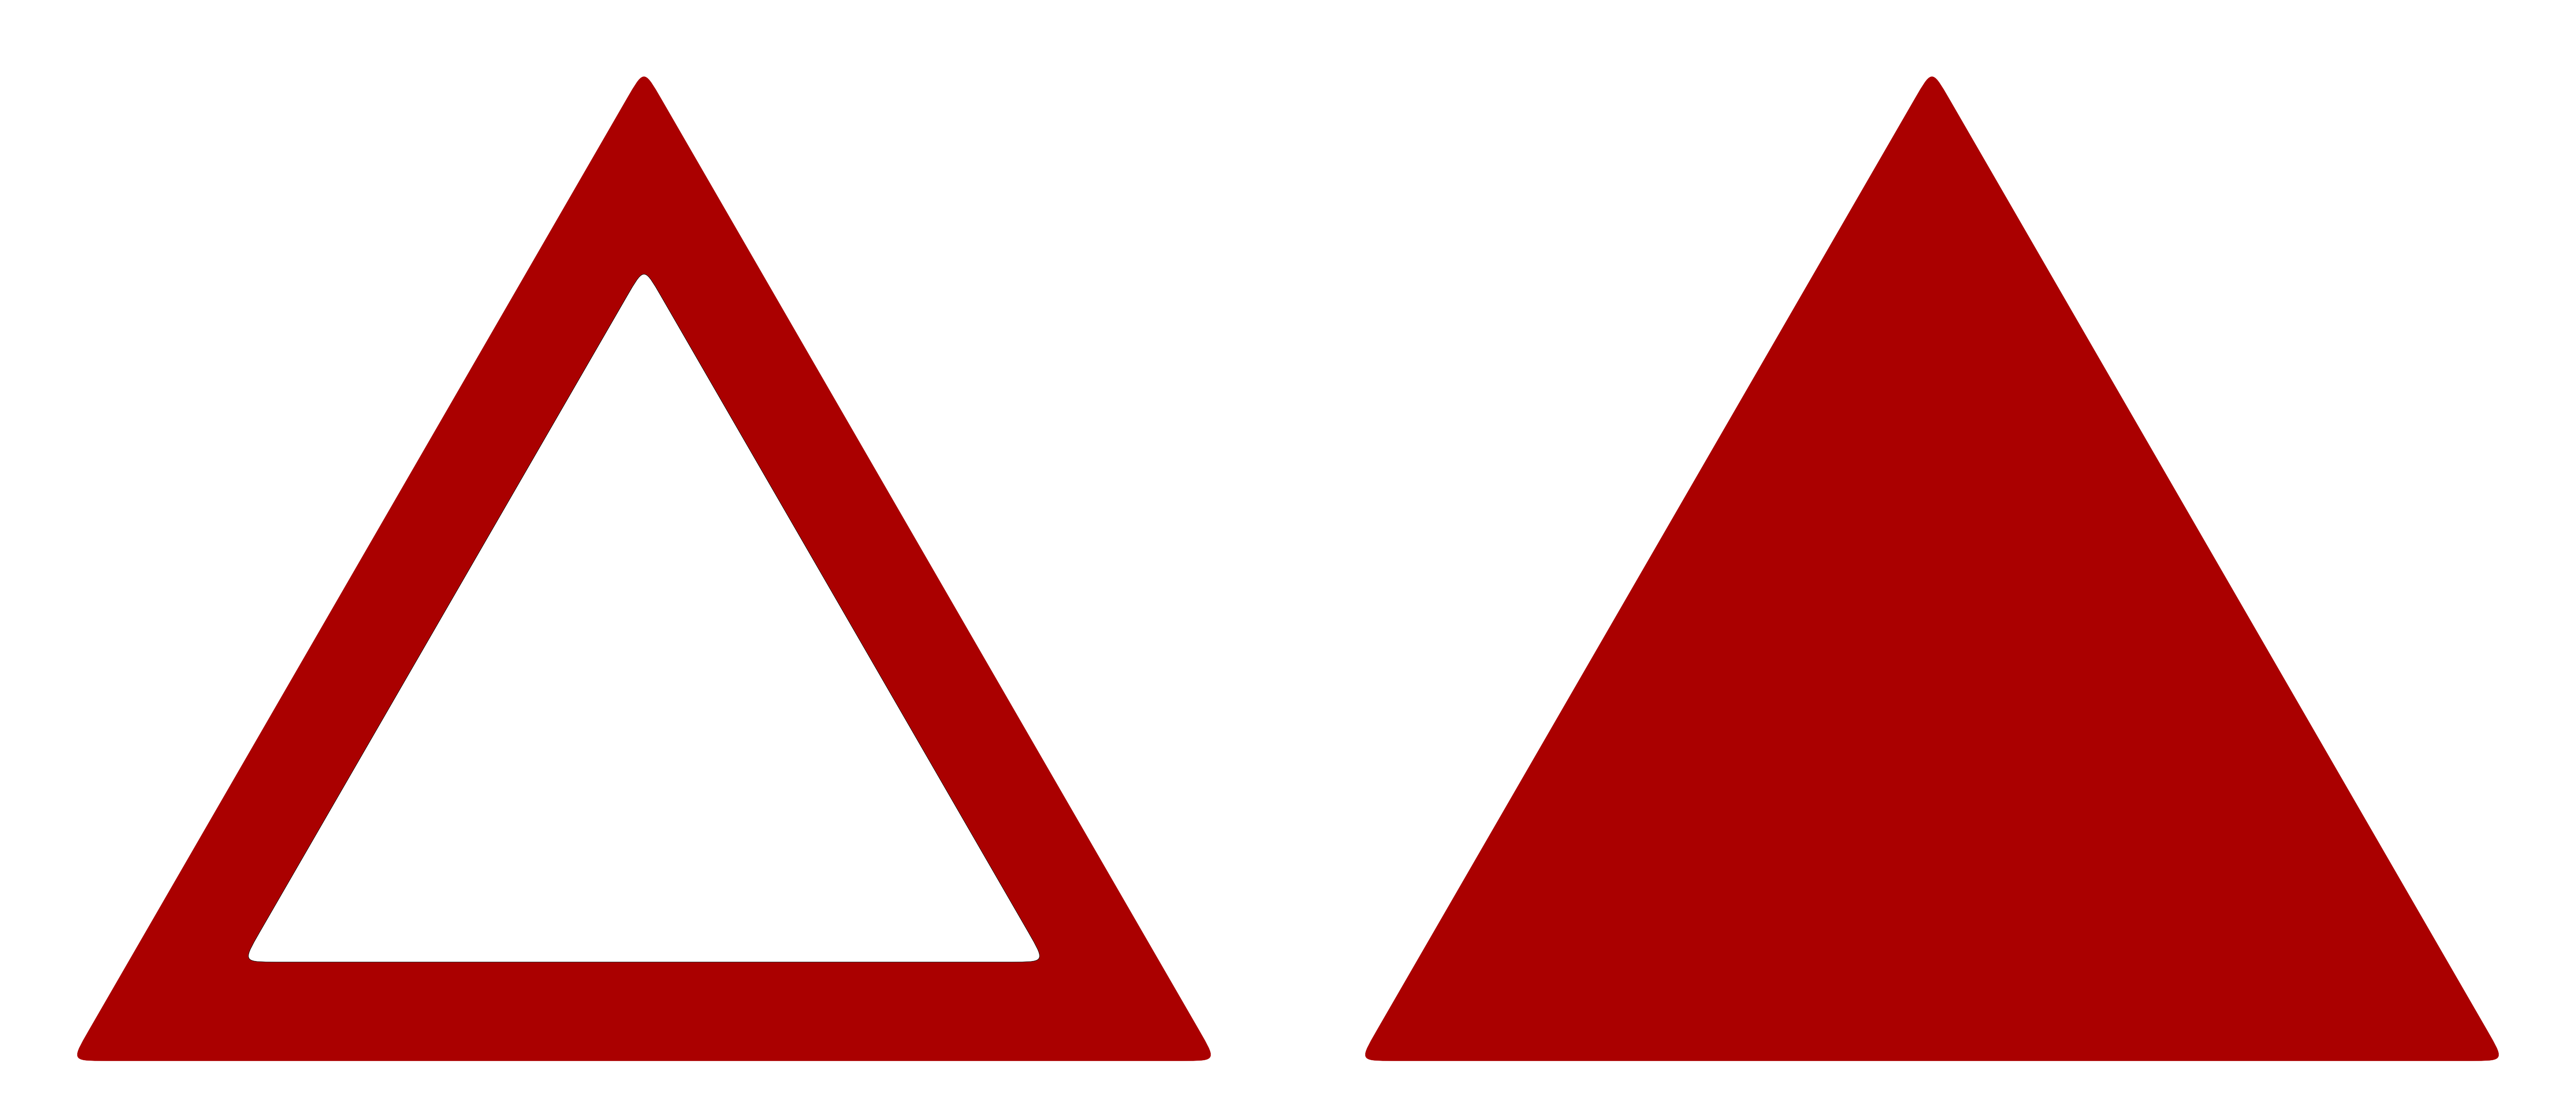 Равнобедренный треугольник символ. Треугольник. Красный треугольник. Красный треугольник знак. Треугольный знак.